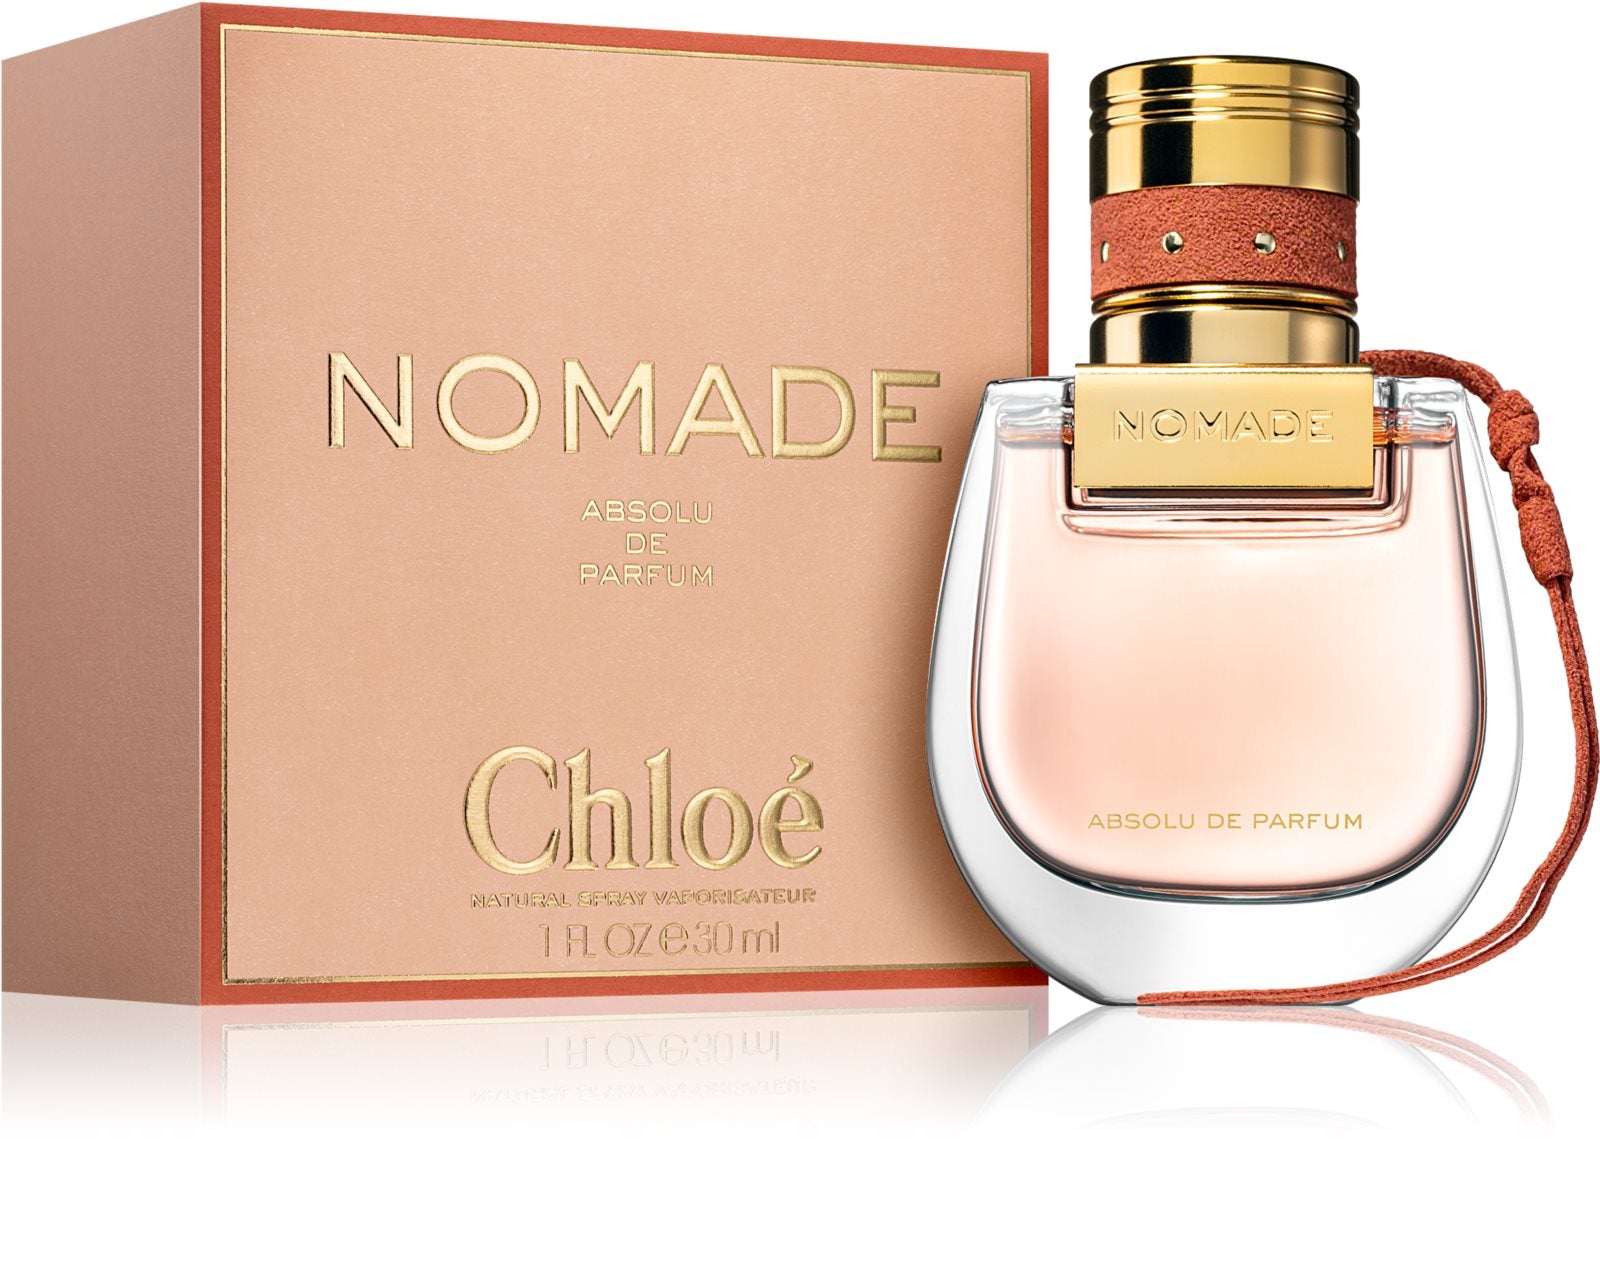 værdig stakåndet omgive Chloé Nomade Absolu de Parfum 30 ml – BS24 Switzerland AG